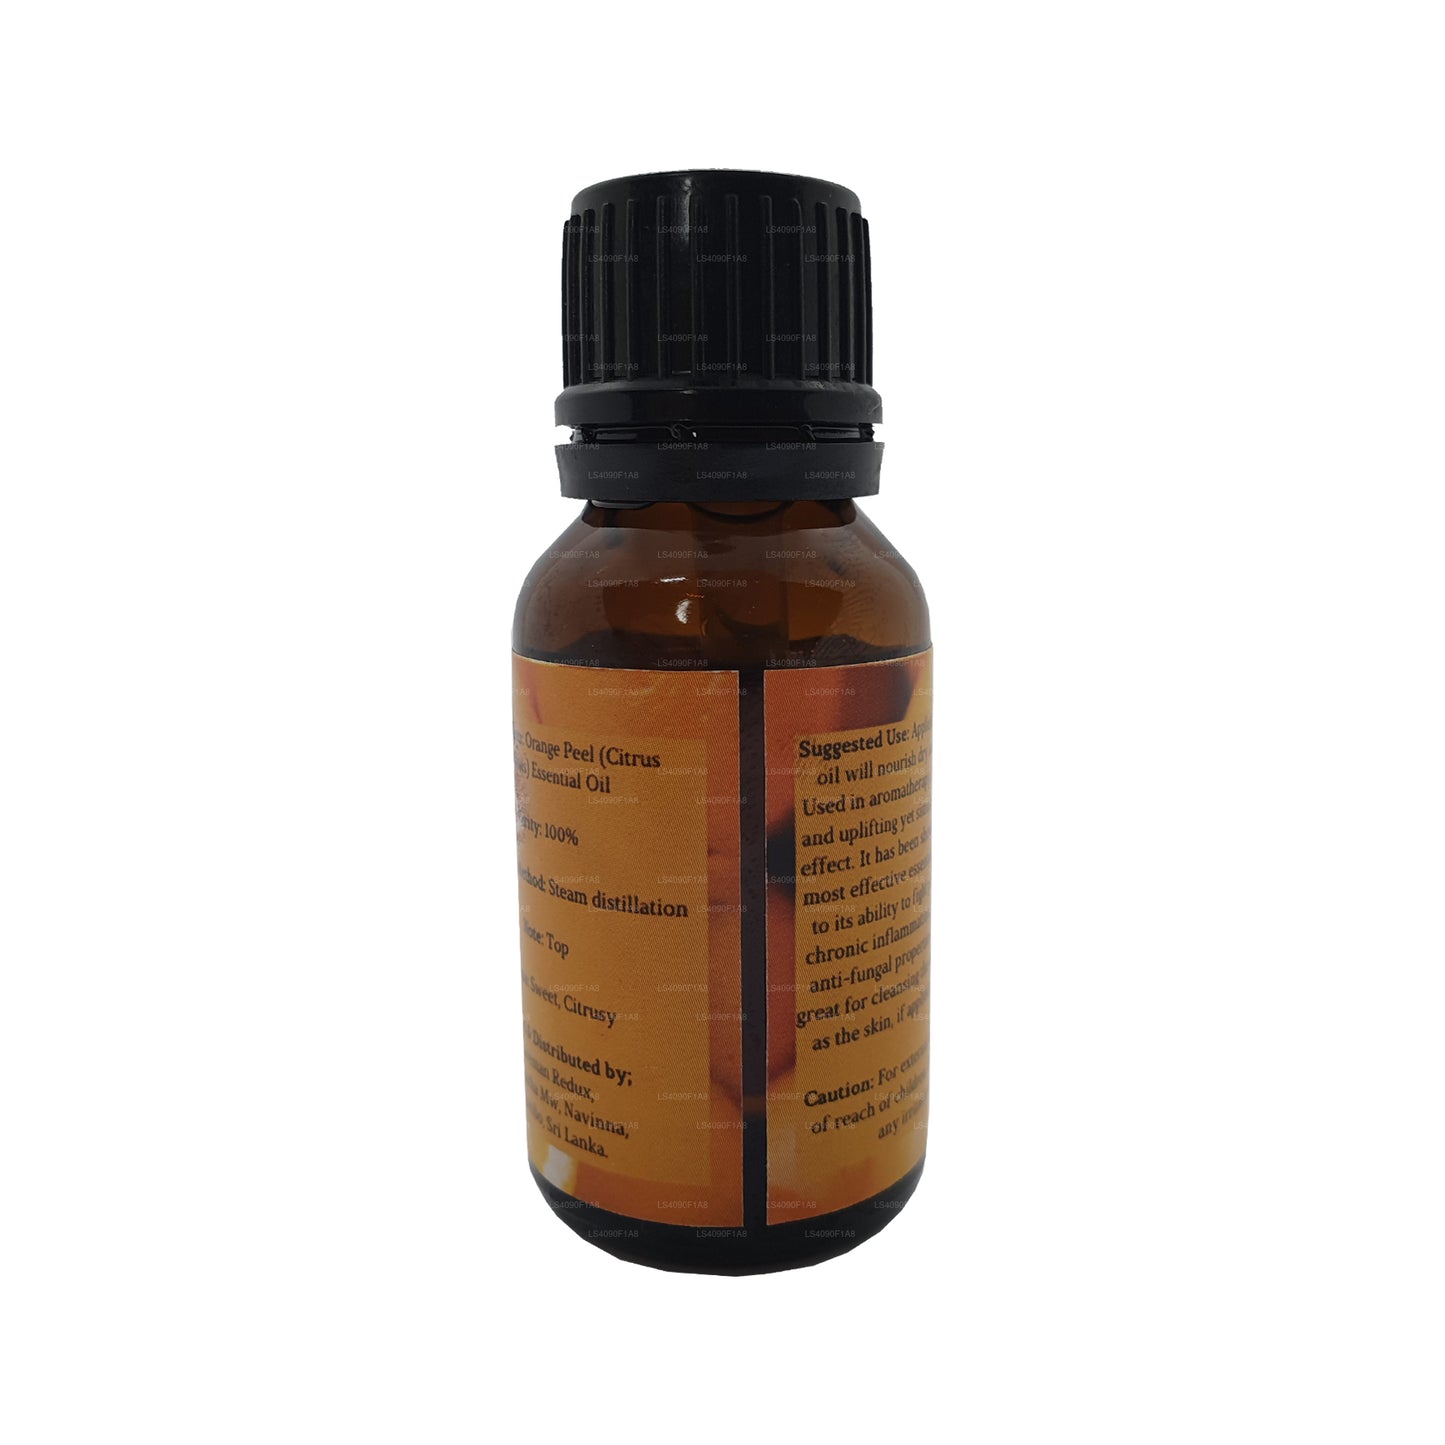 Lakpura Orange Essential Oil (15ml)